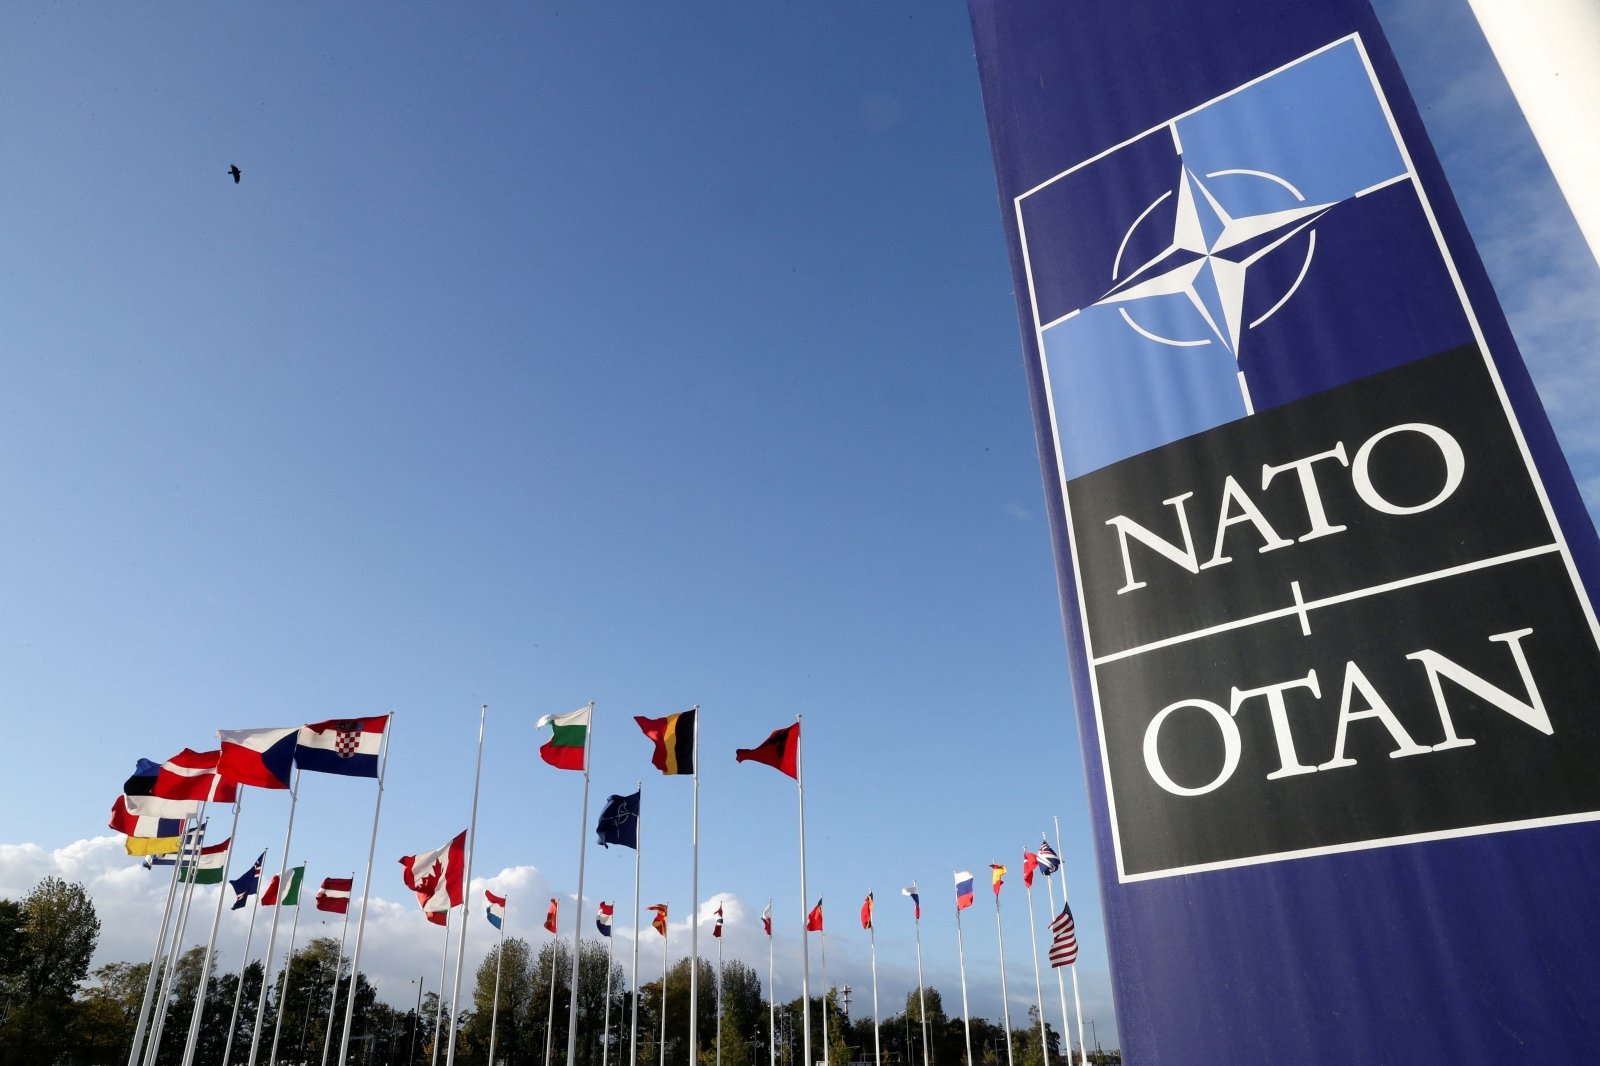 A NATO Vilniusi csúcstalálkozója, mint ok Ukrajna támogatásának növelésére